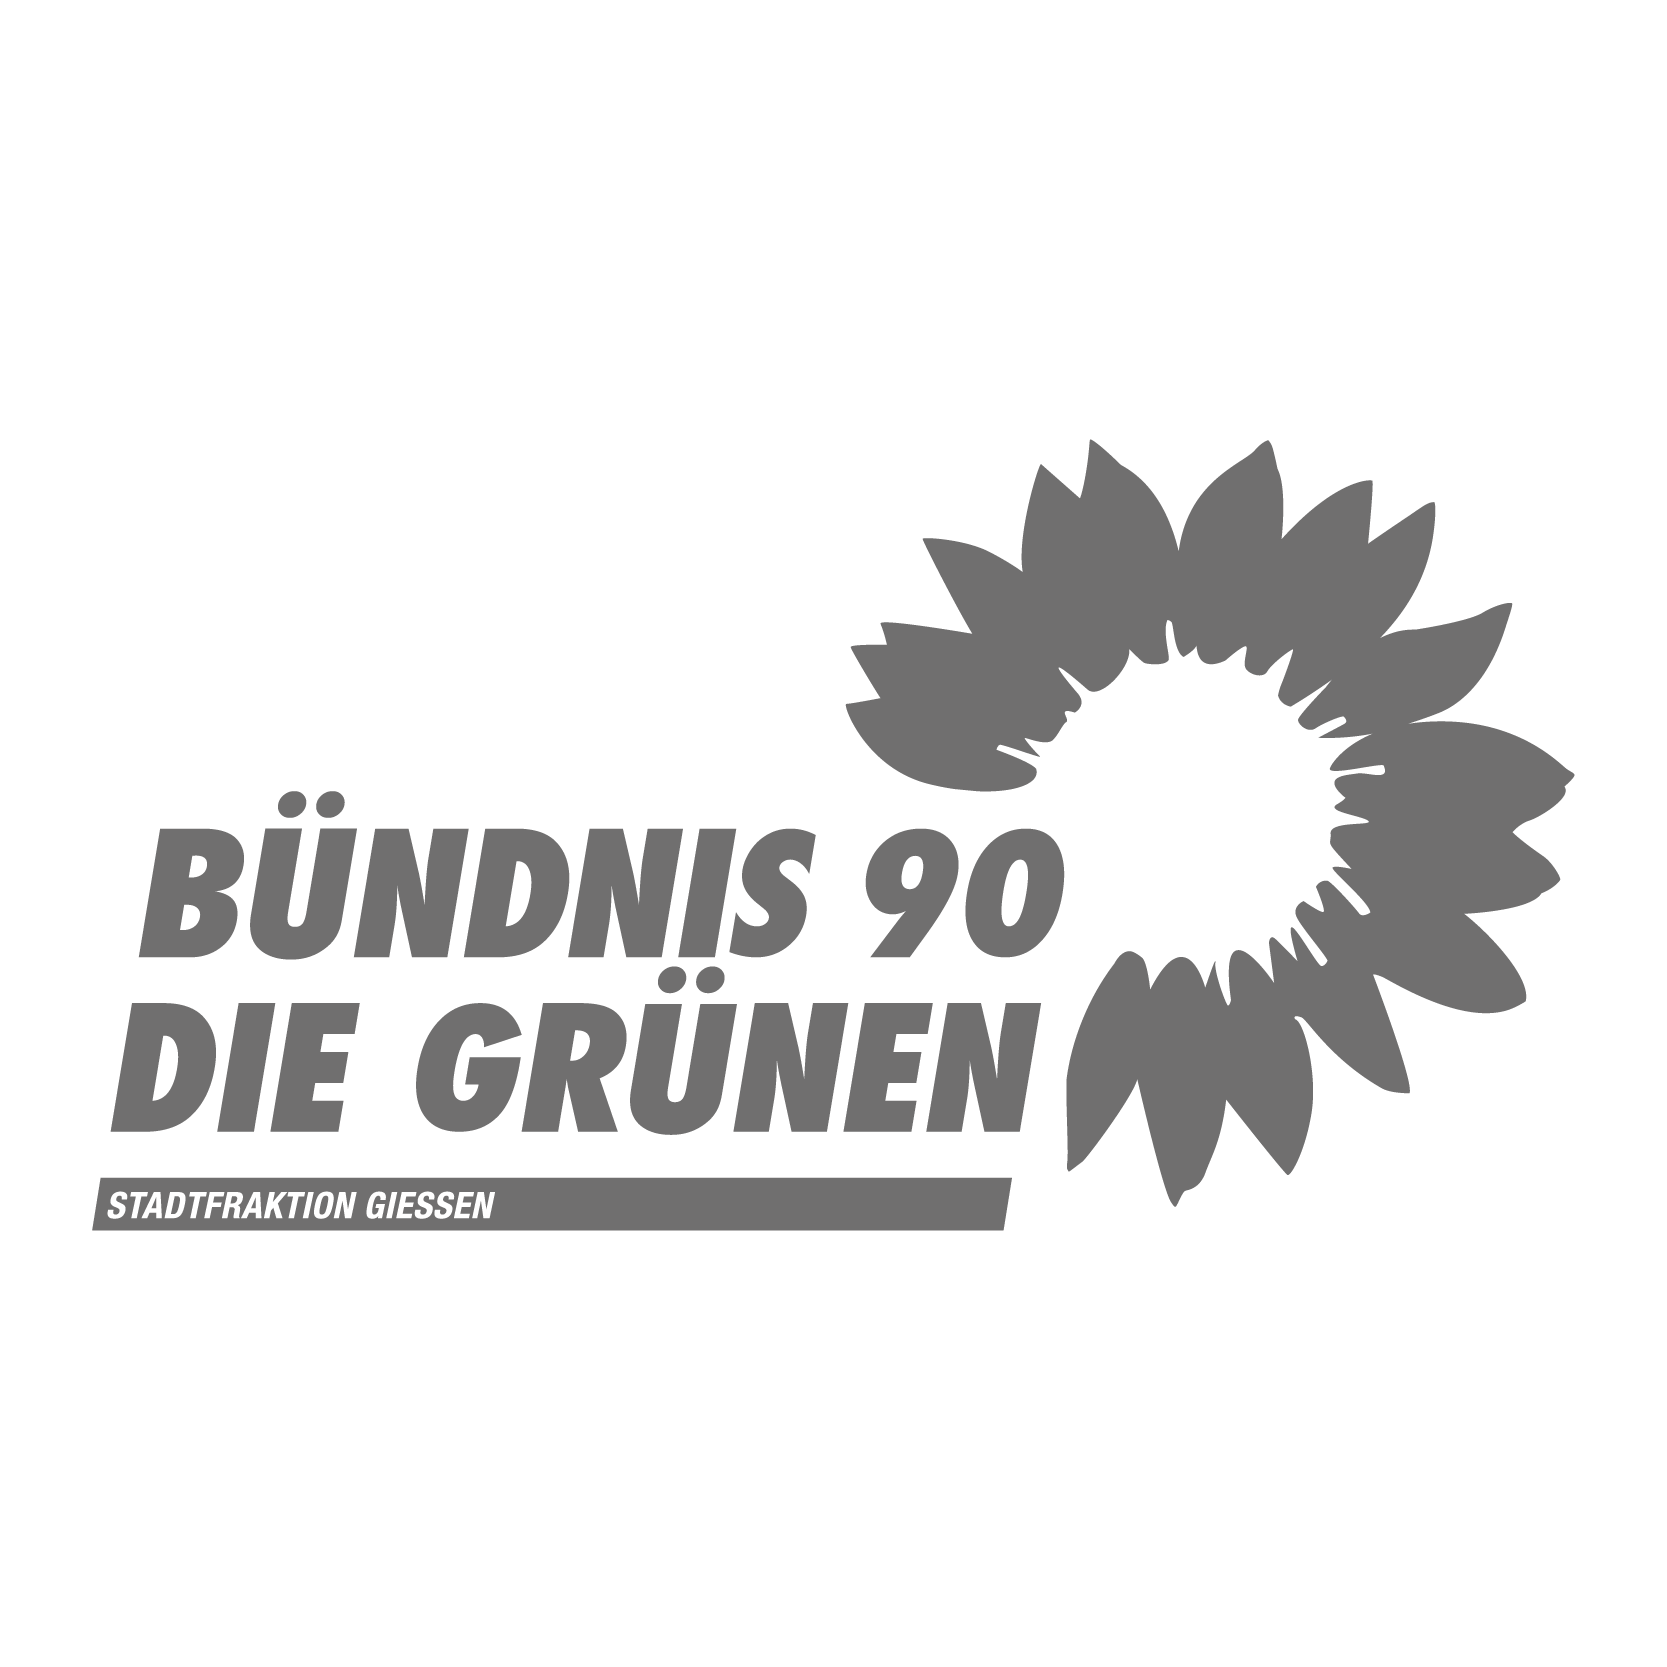 Die Grünen - Stadtfraktion Gießen